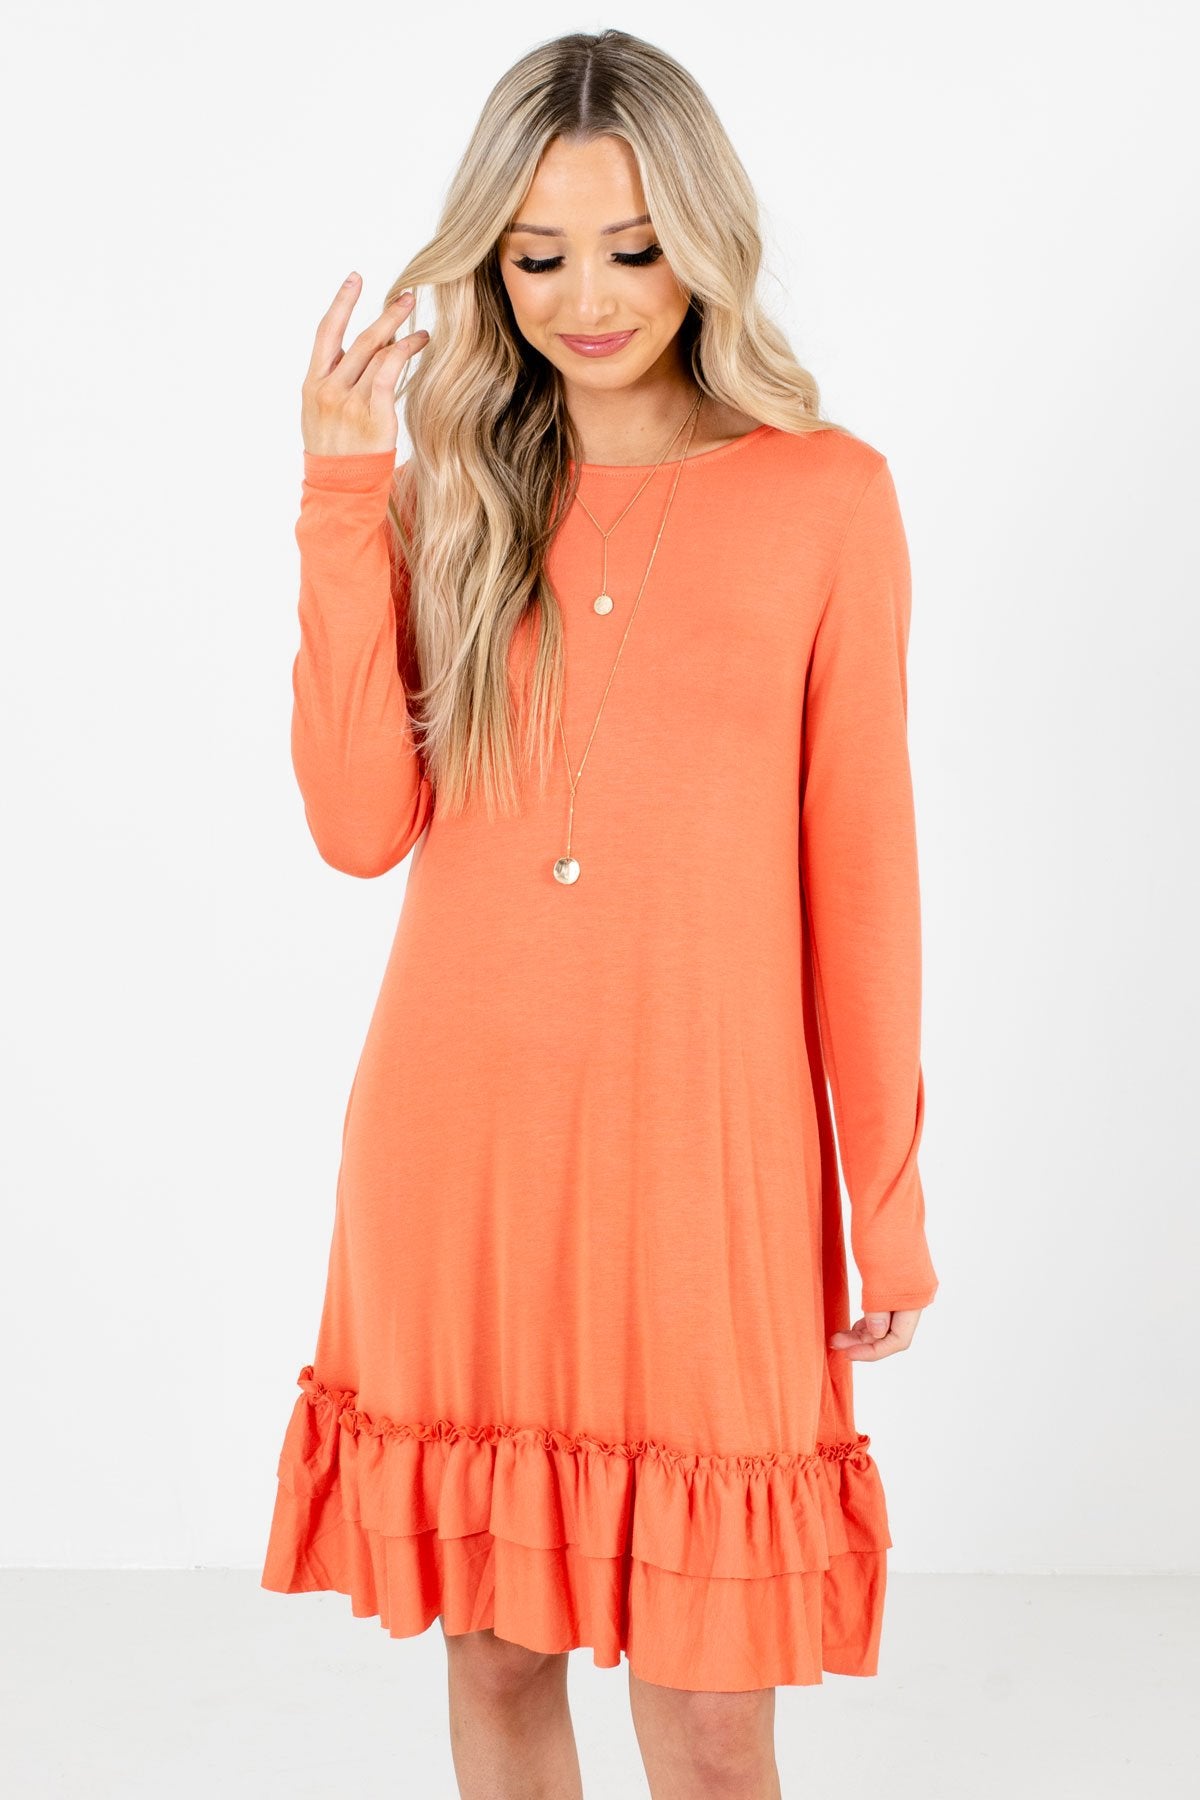 Orange Ruffled Hem Boutique Knee-Length Dresses for Women